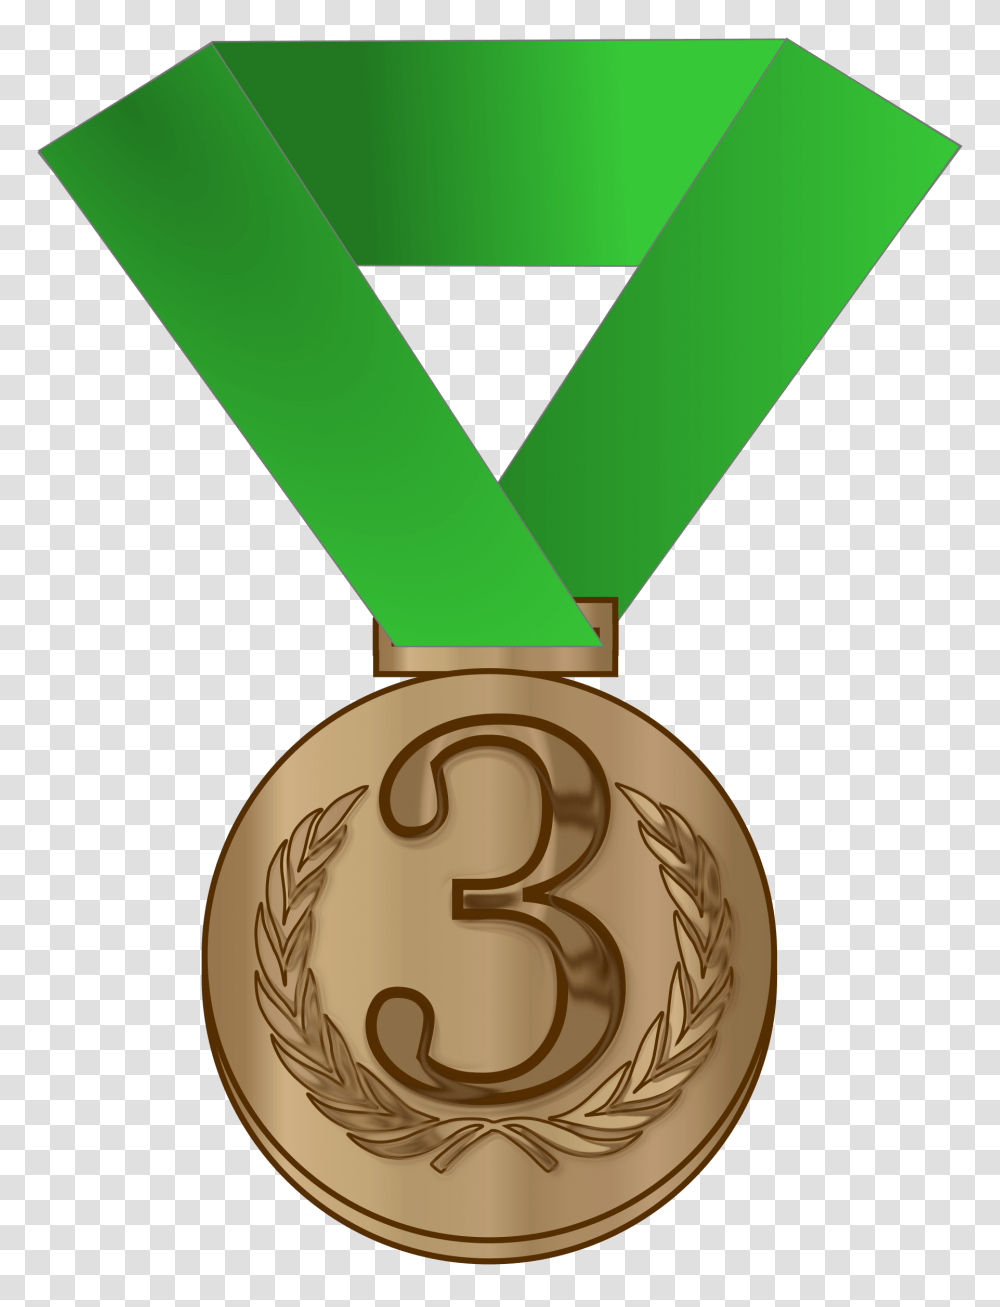 Bronze Medal Award Icons, Gold, Trophy, Gold Medal Transparent Png